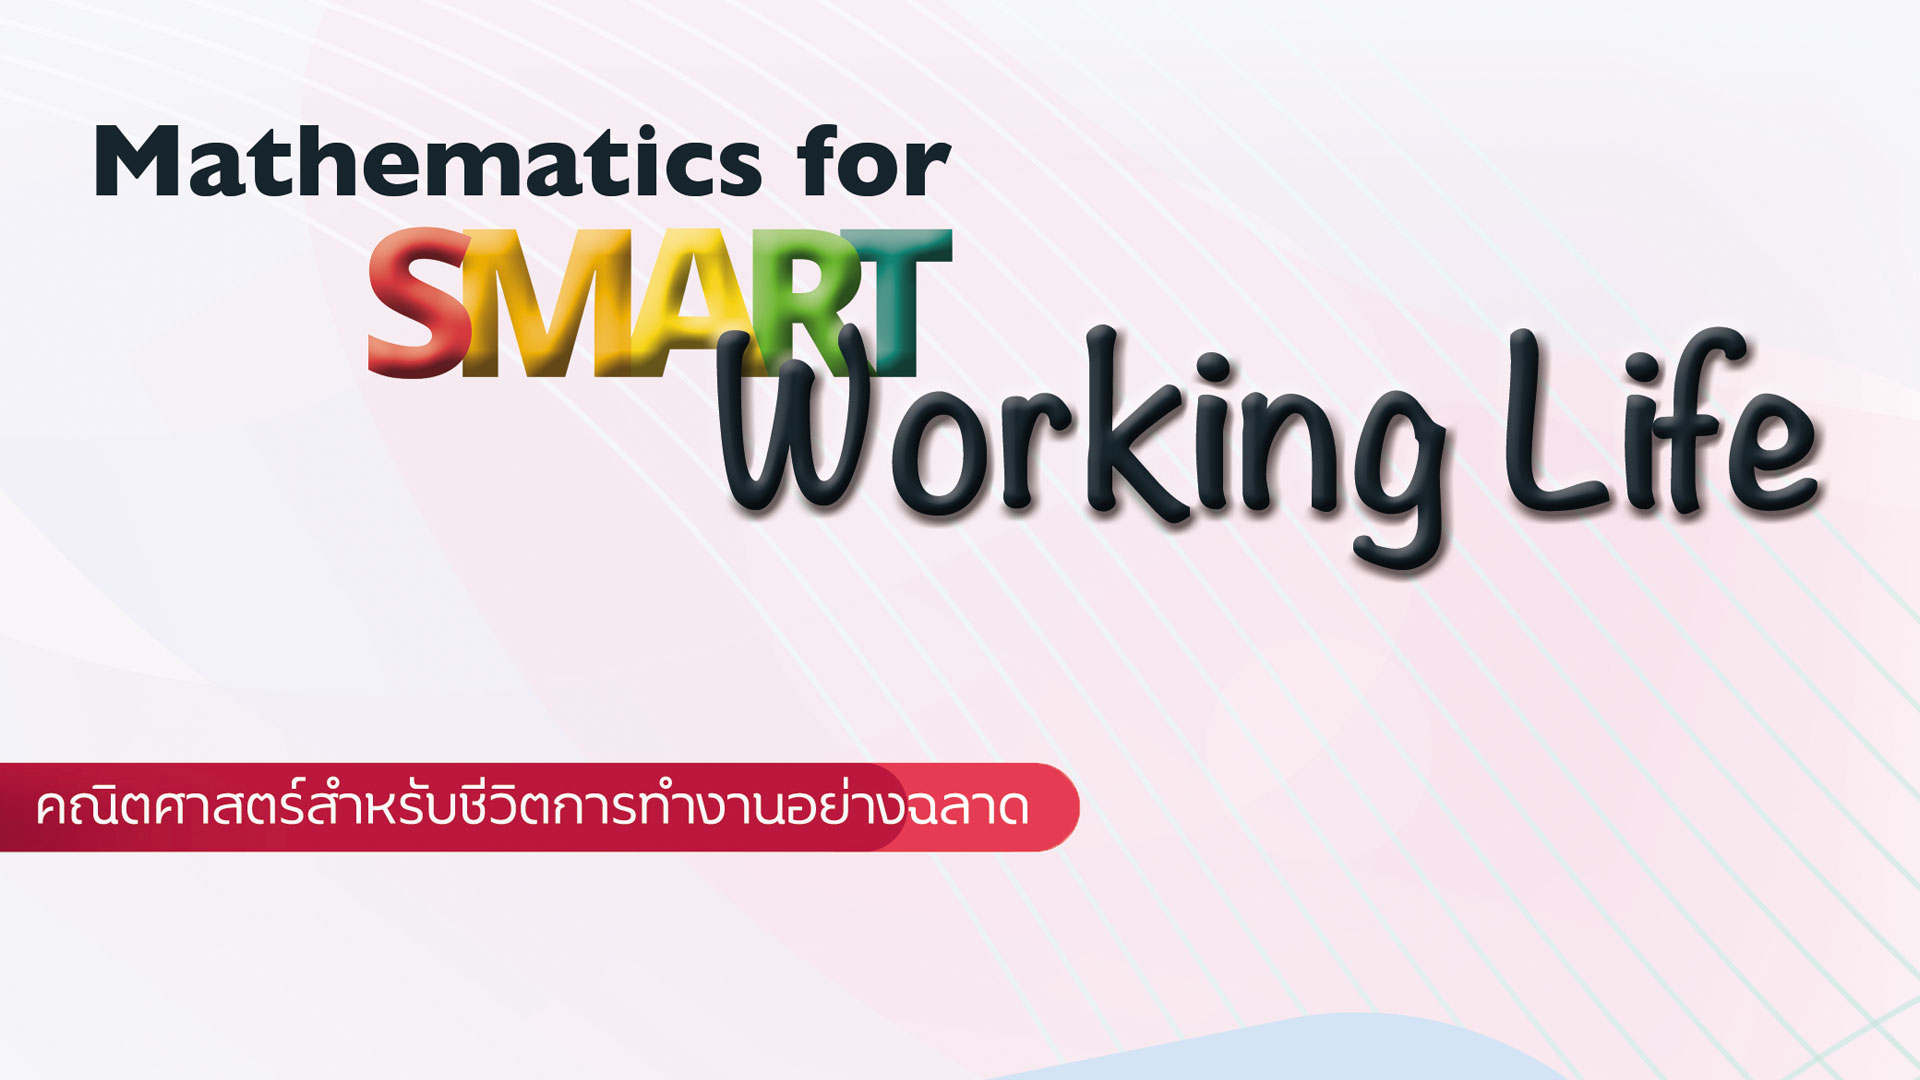 คณิตศาสตร์สำหรับชีวิตการทำงานอย่างฉลาด (Mathematics for Smart Working Life) SCIENCE001